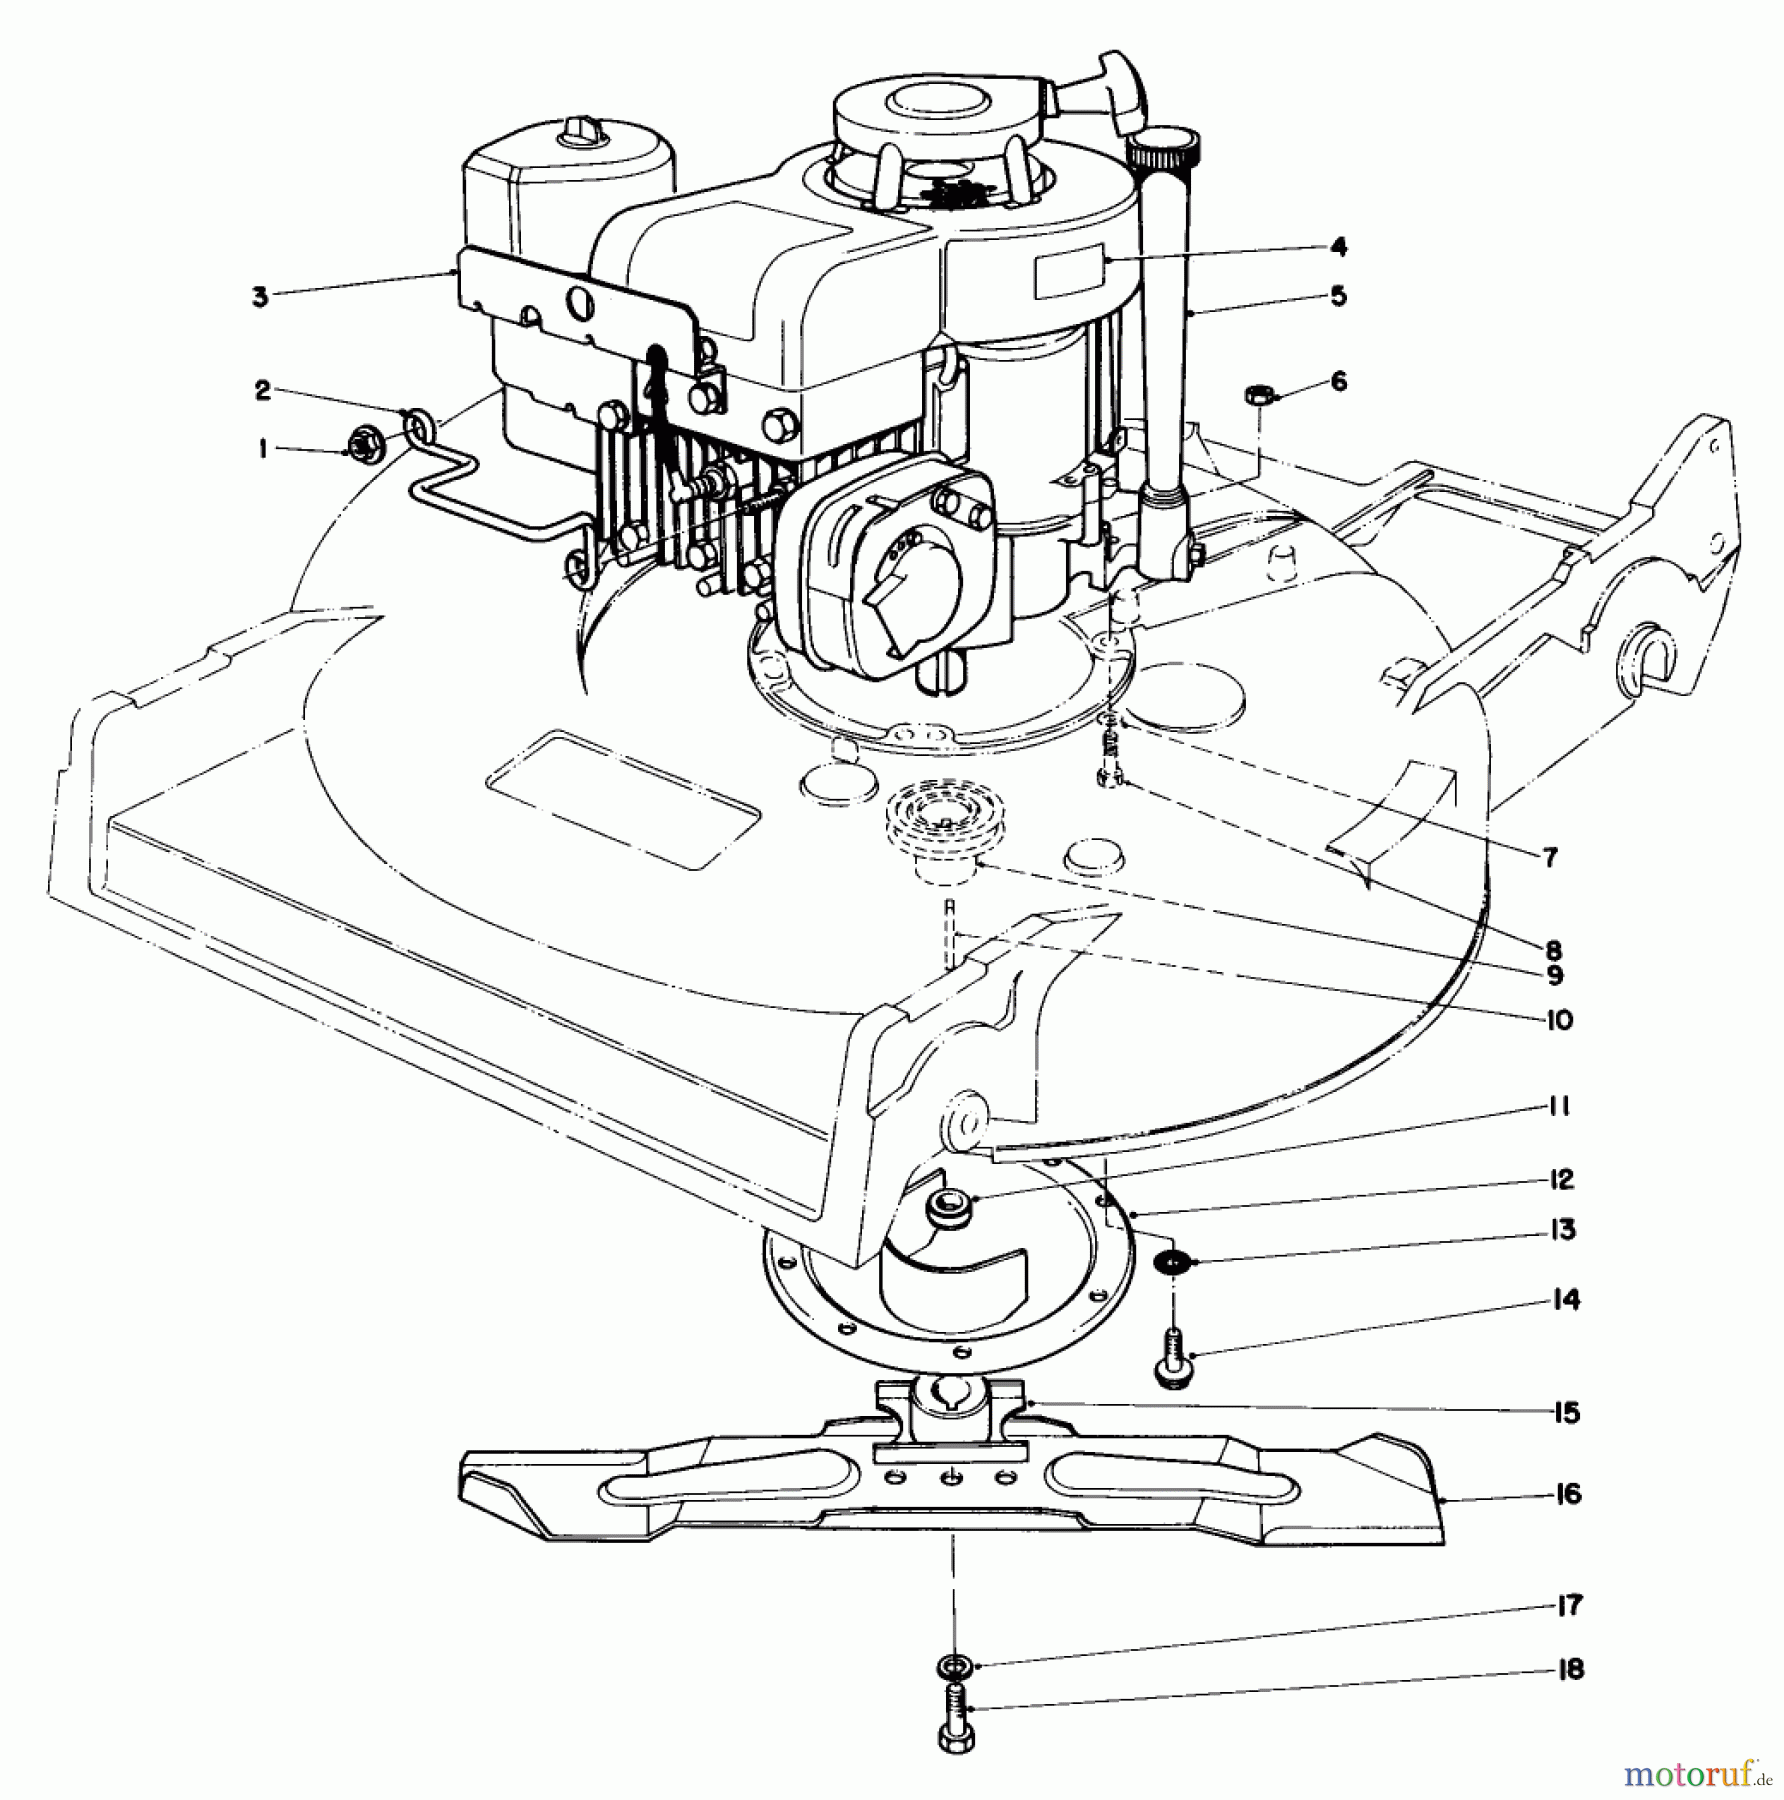  Toro Neu Mowers, Walk-Behind Seite 2 22015 - Toro Lawnmower, 1984 (4000001-4999999) ENGINE ASSEMBLY (MODEL 22020)